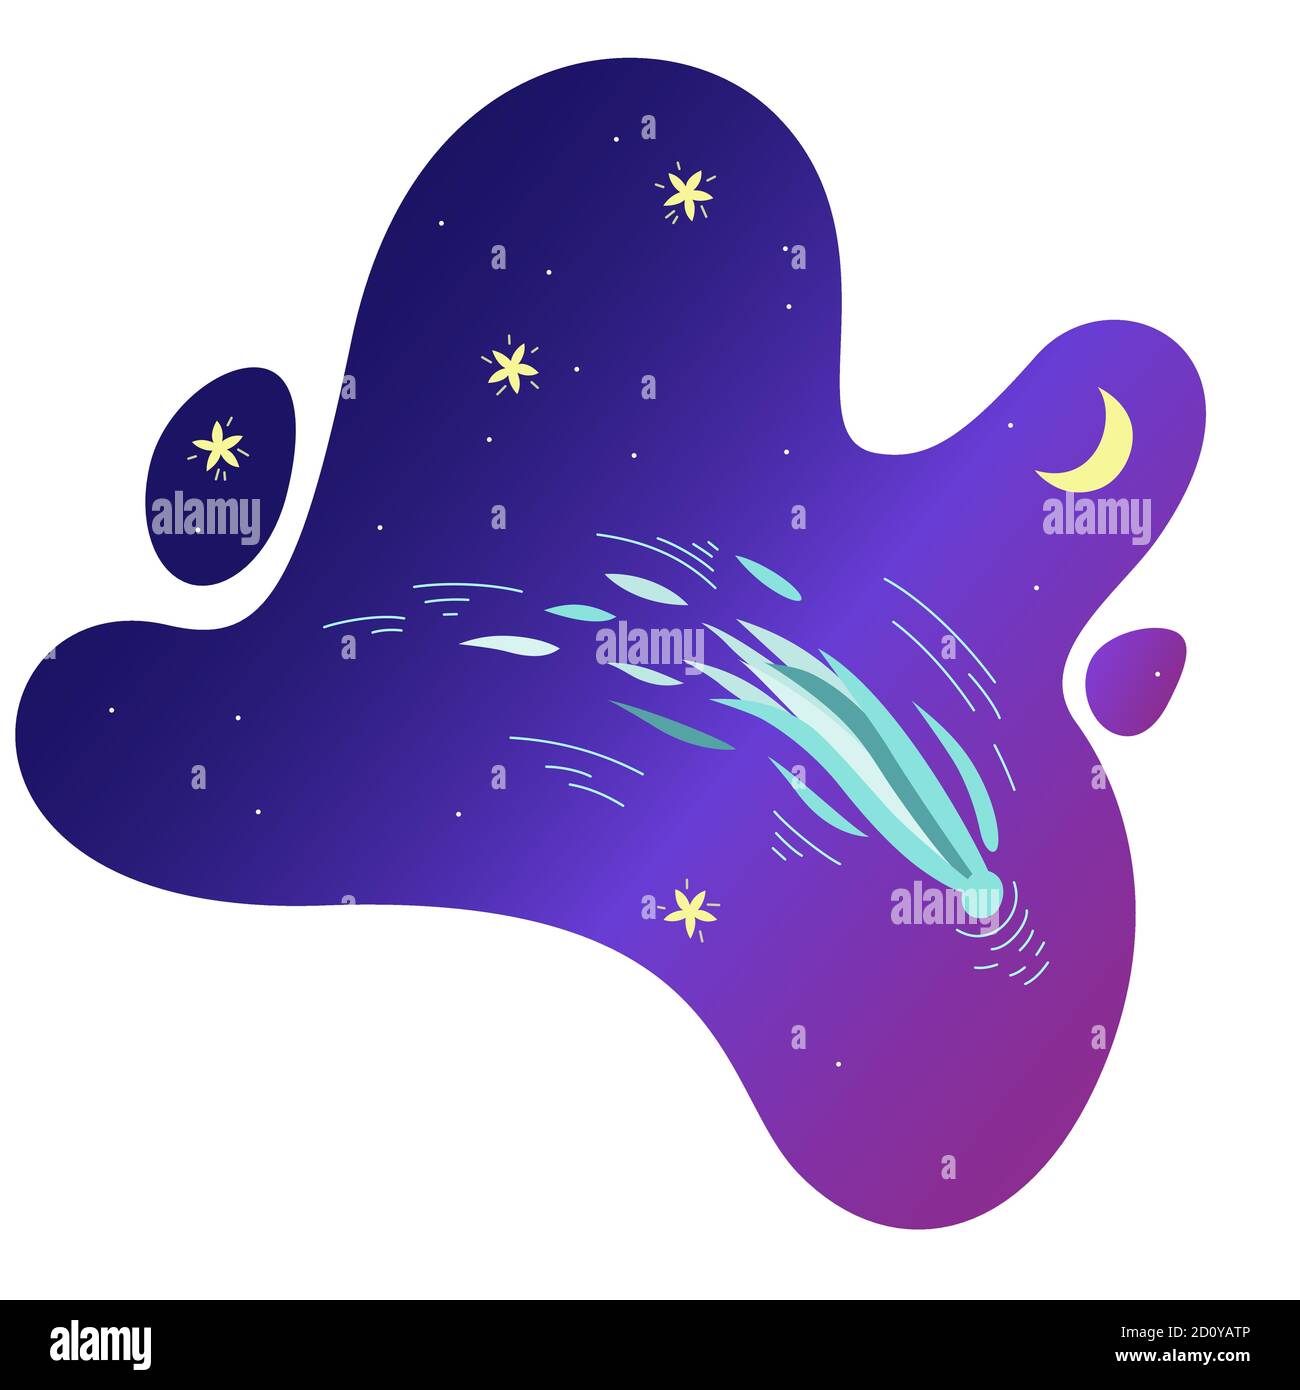 Komet fliegt im violetten Himmel mit glänzenden Sternen und Halbmond. Vektor-Illustration in niedlichen Cartoon-Stil Stock Vektor